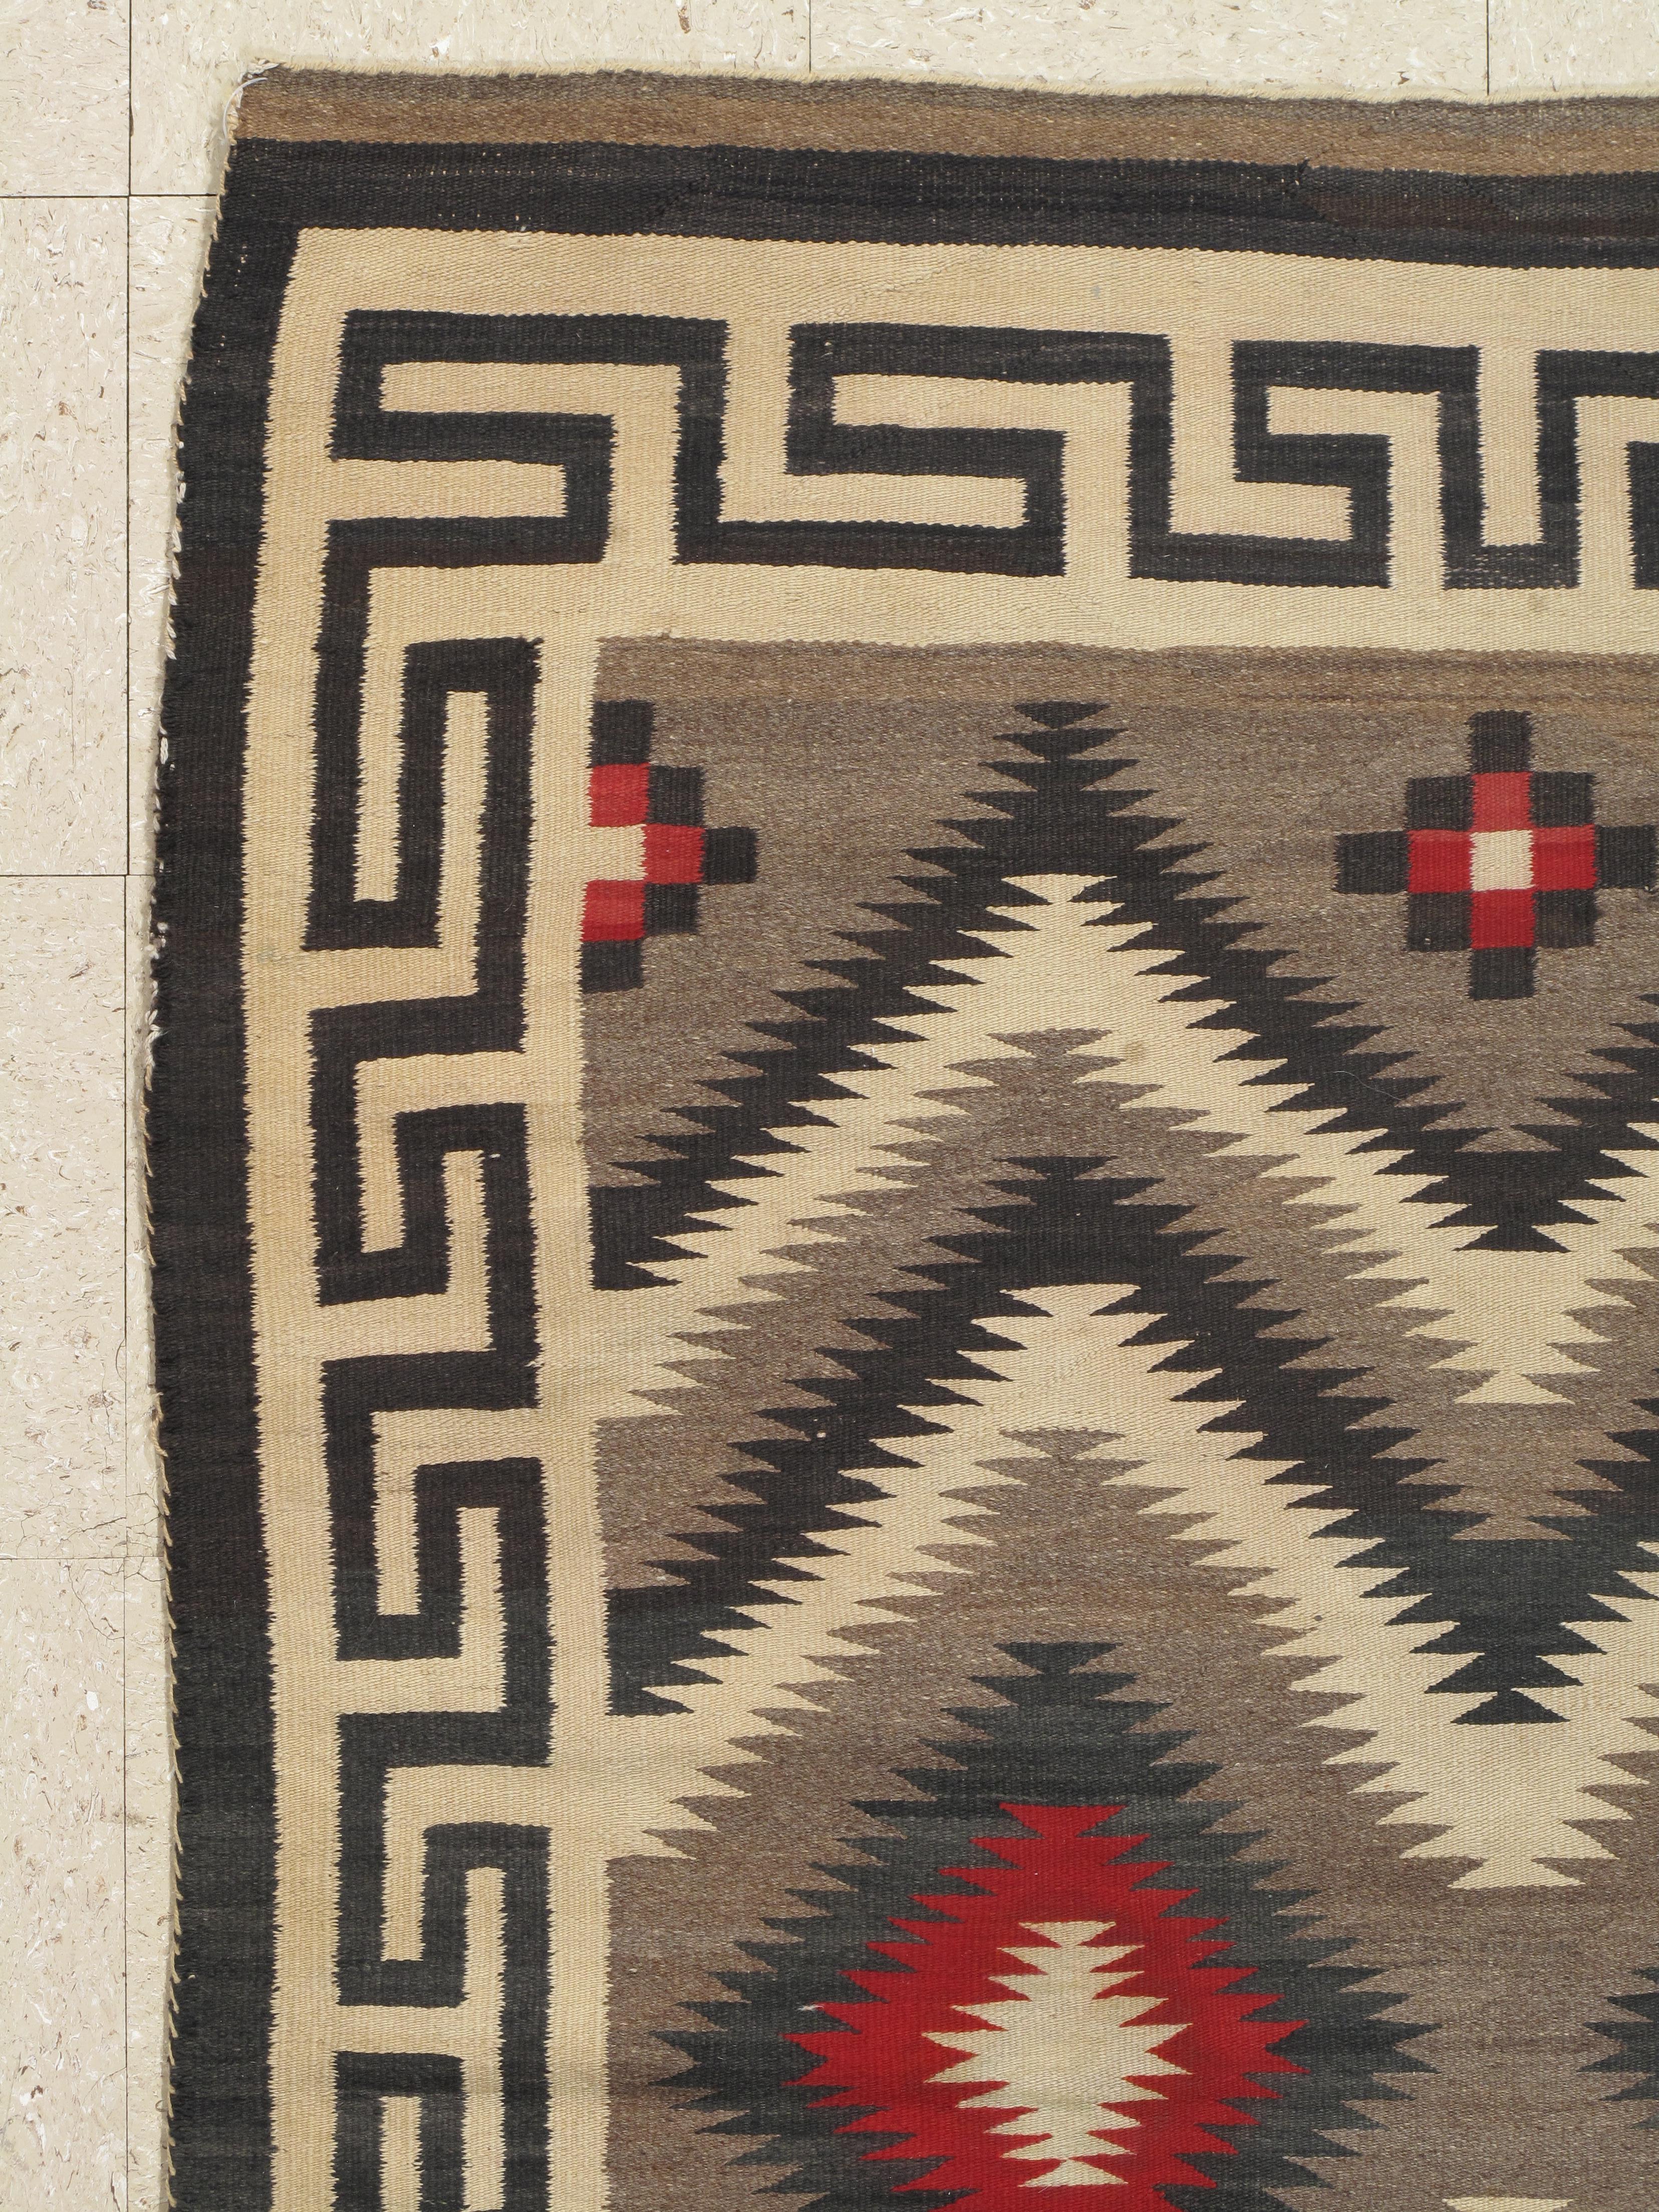 American Vintage Navajo Carpet, Oriental Rug, Handmade Wool Rug, Red, Black, Ivory, Bold For Sale